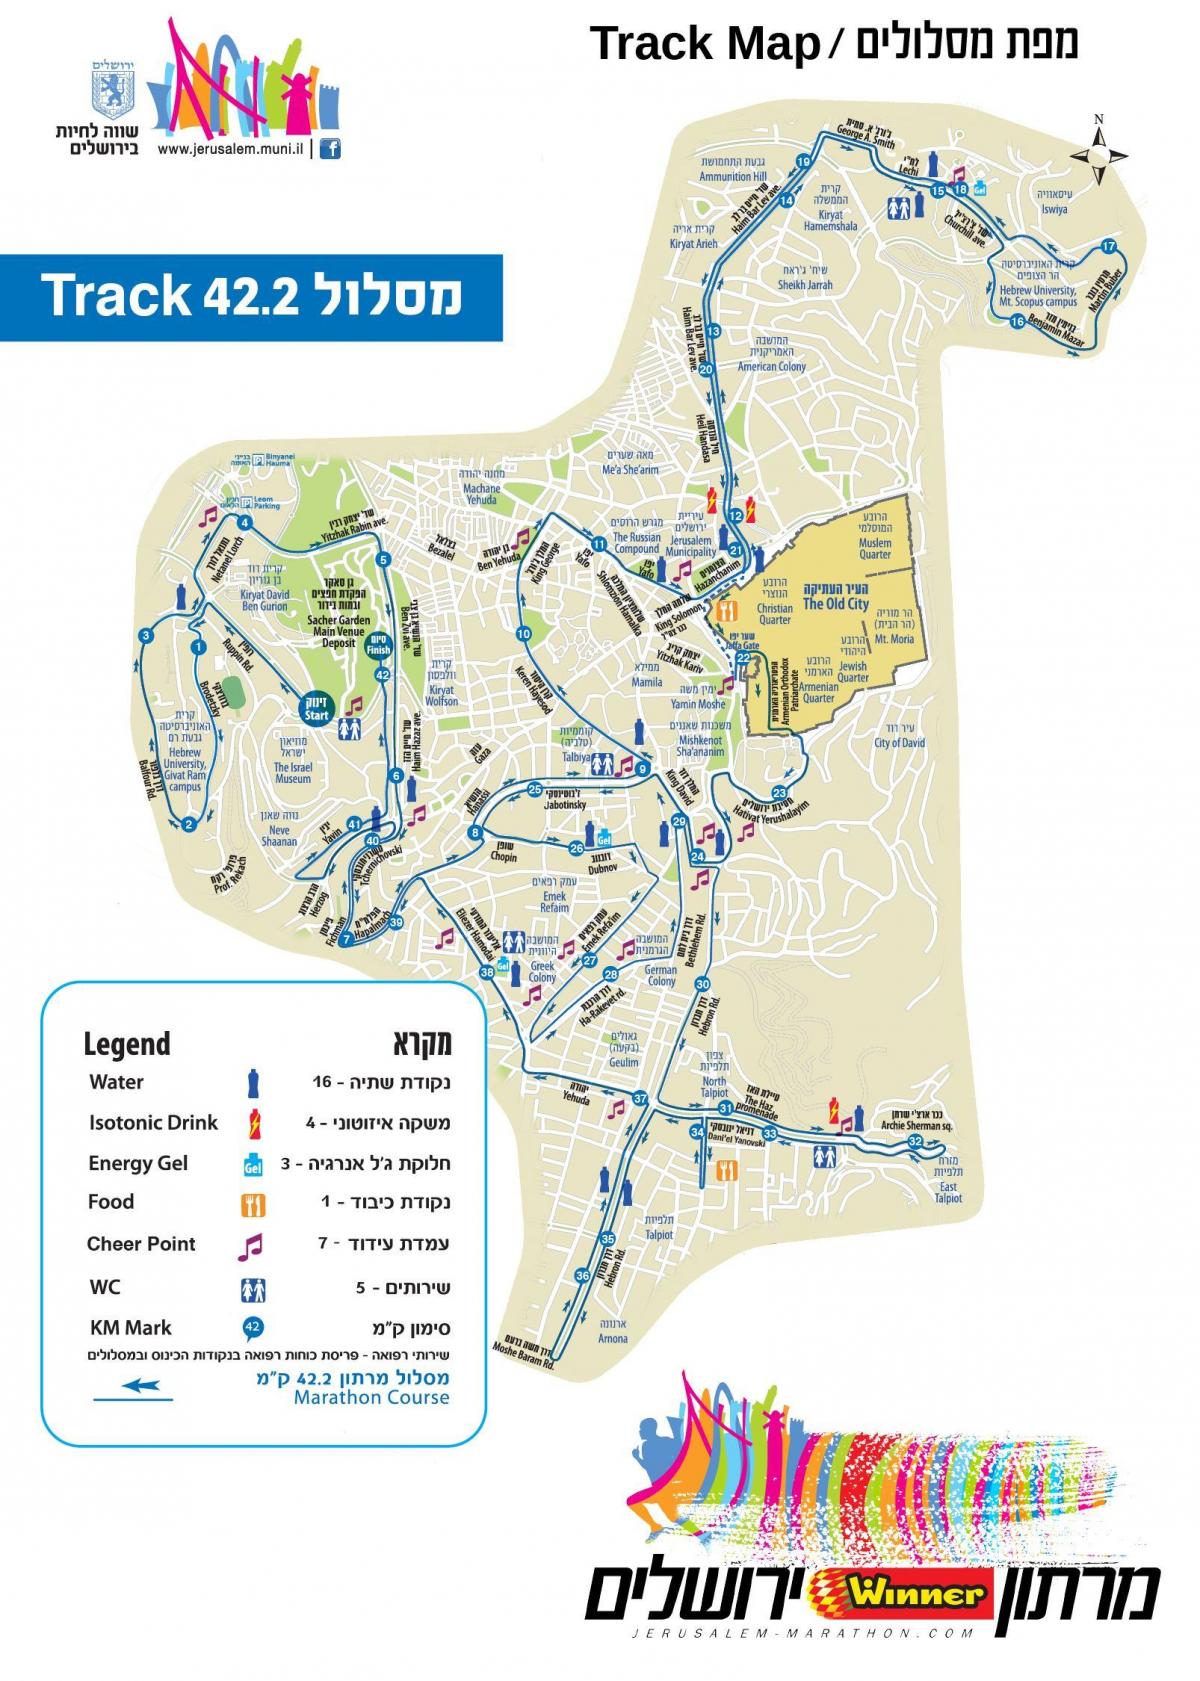 kaart van Jeruzalem marathon